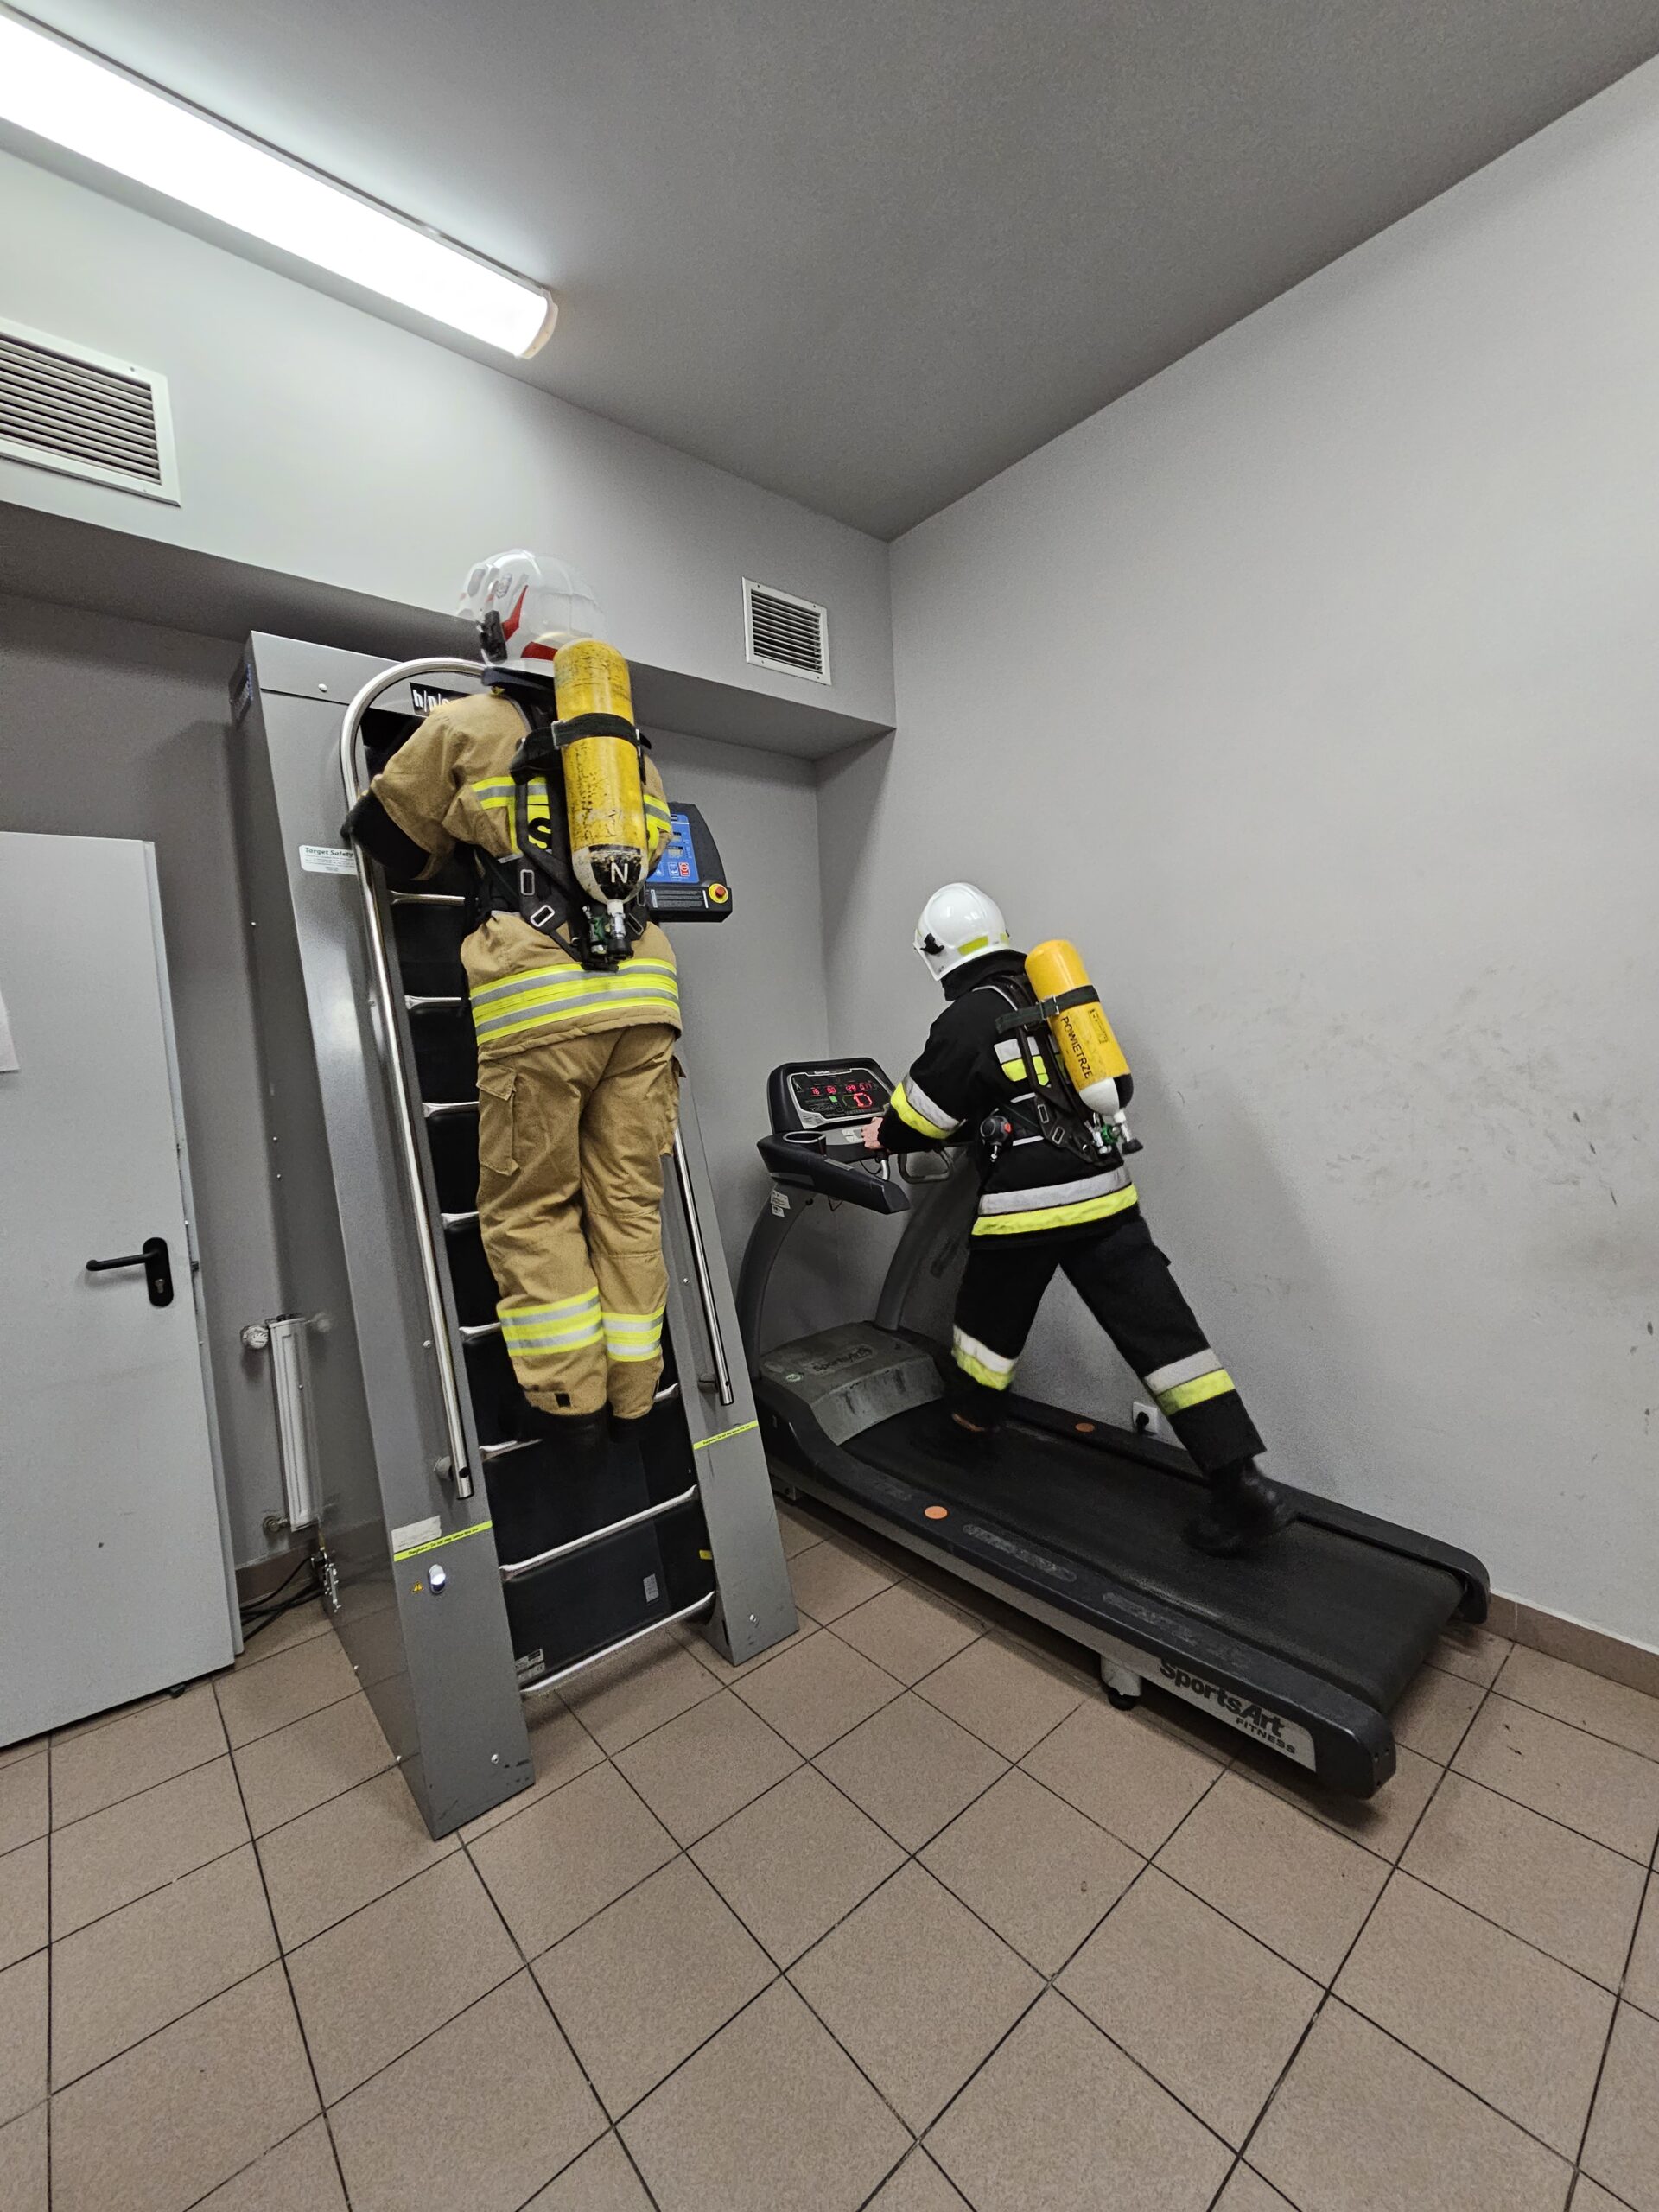 Dwóch strażaków wyposażonych w ubranie specjalne, hełm strażacki i aparat powietrzny ćwiczy swoją wydolność na bieżni i drabinie.